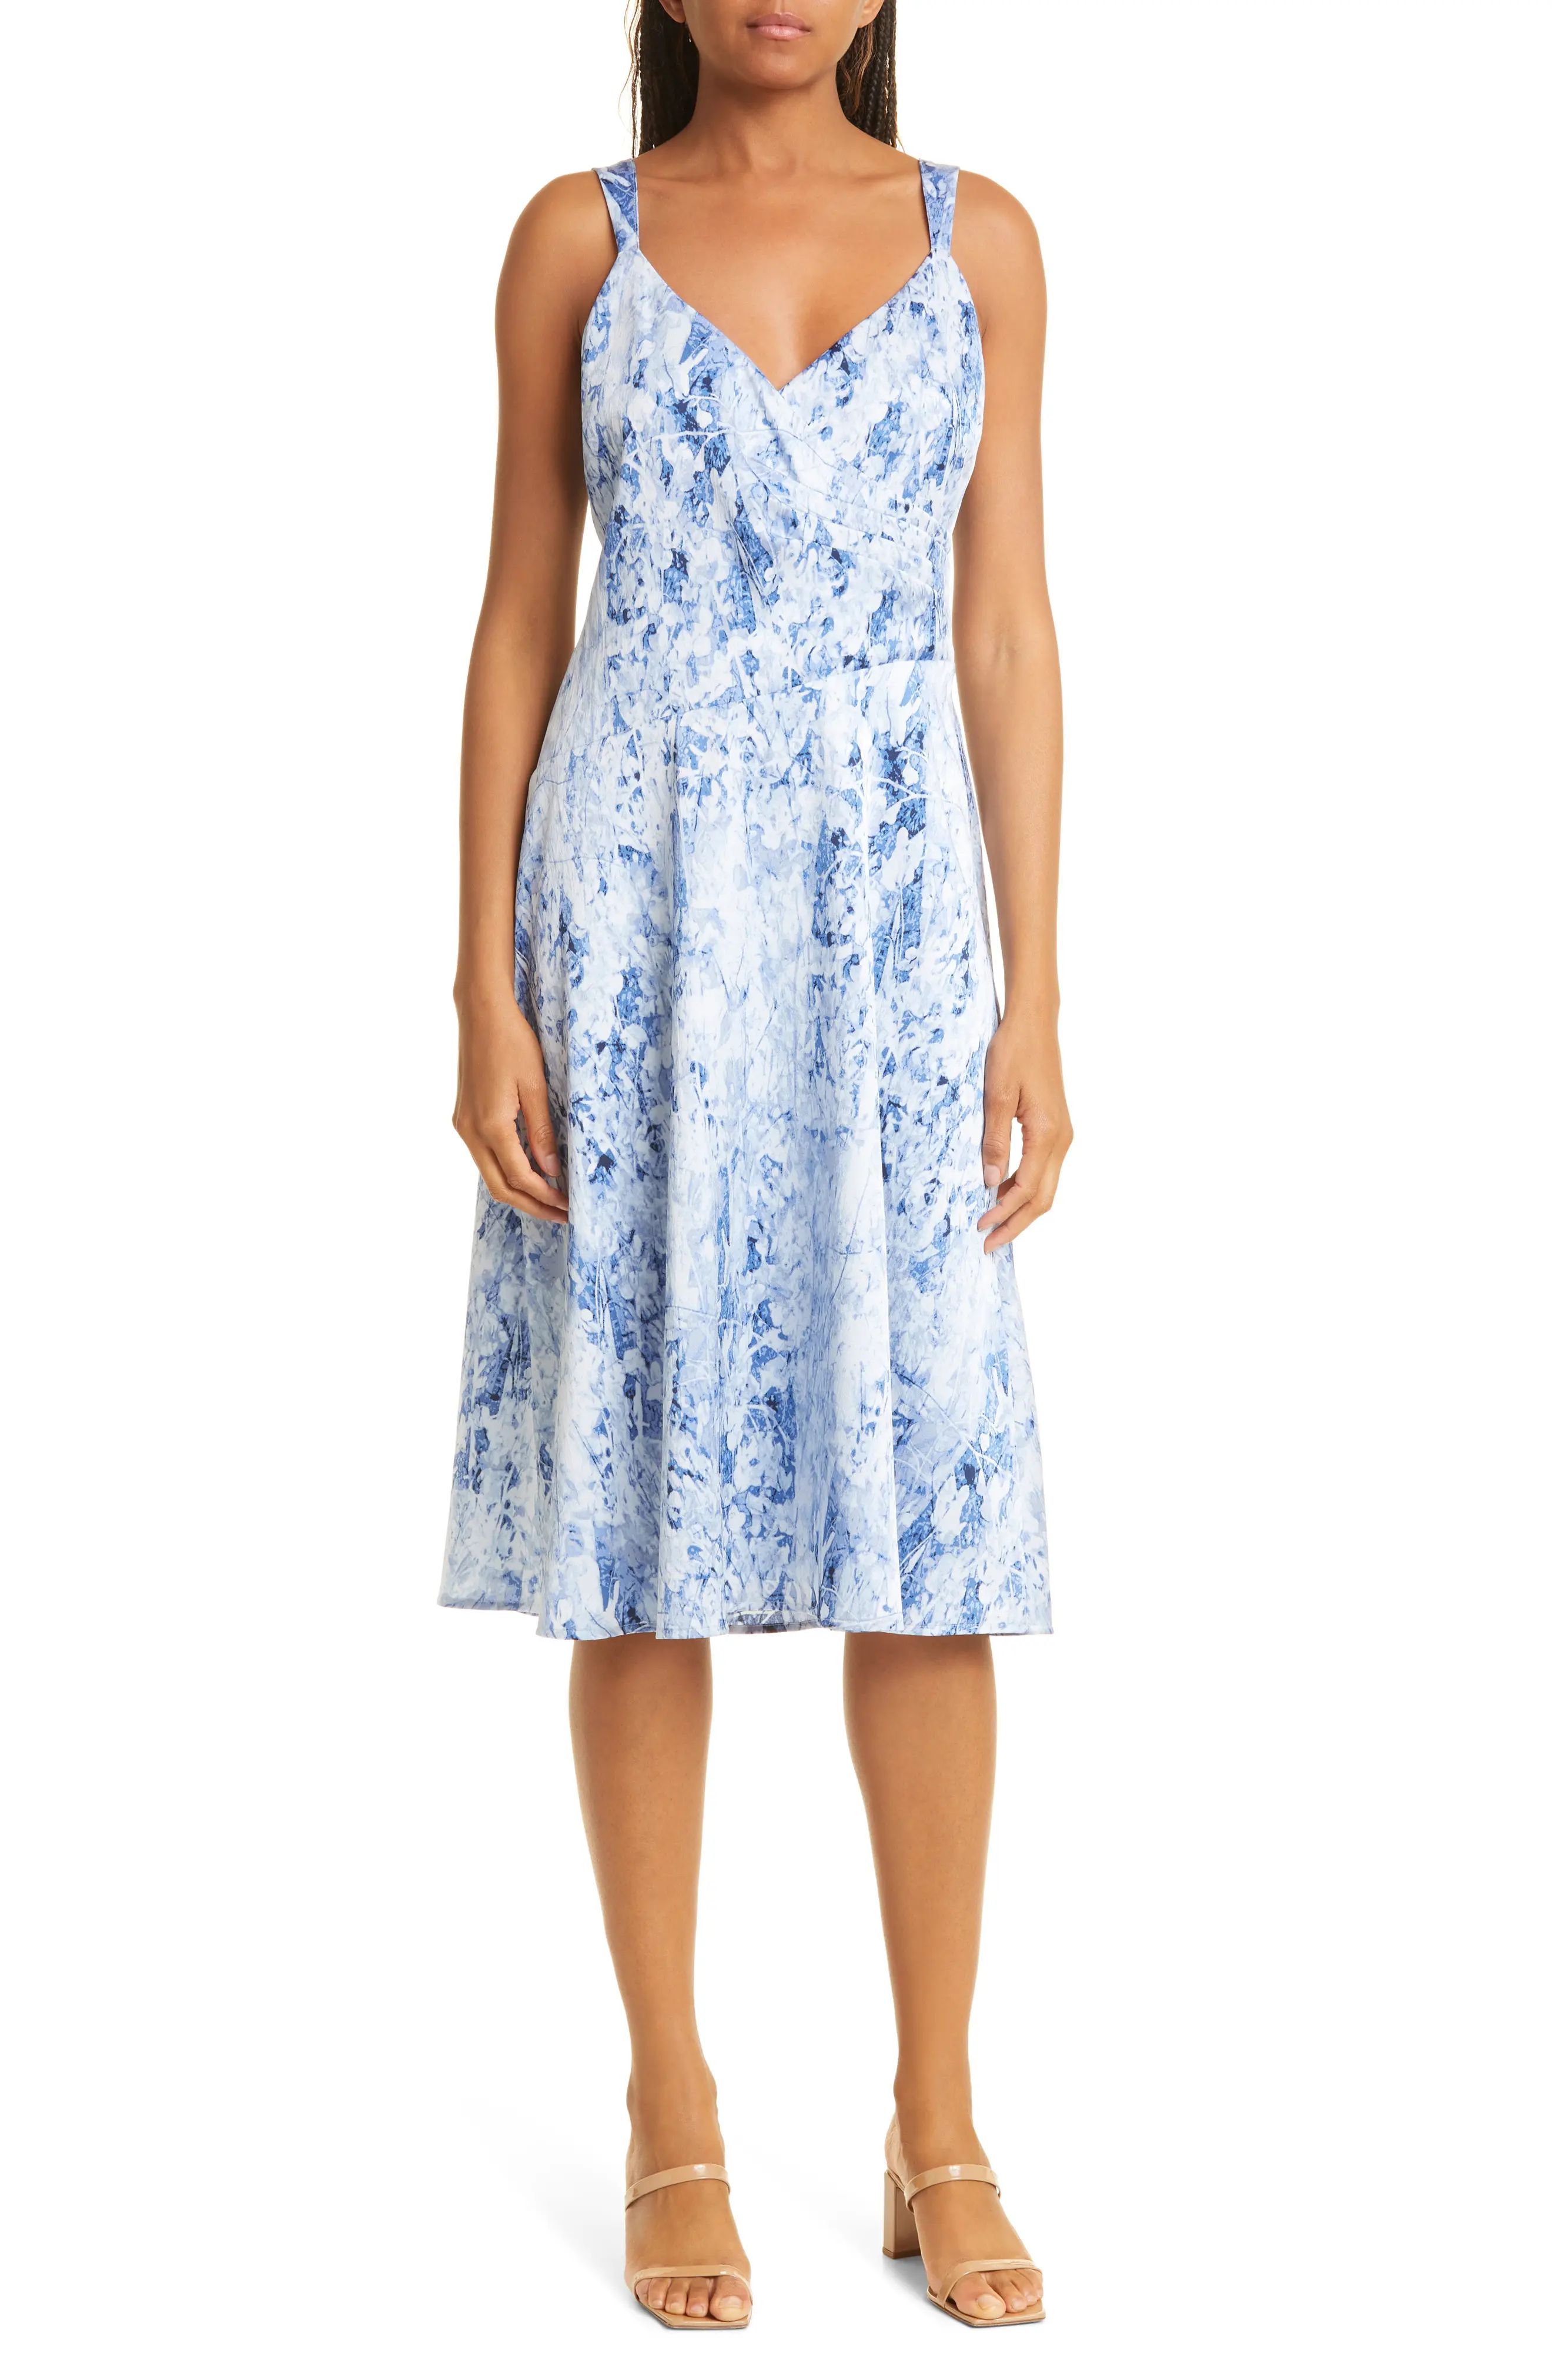 Donna Karan New York Floral Dress in Blue Print at Nordstrom, Size 12 | Nordstrom